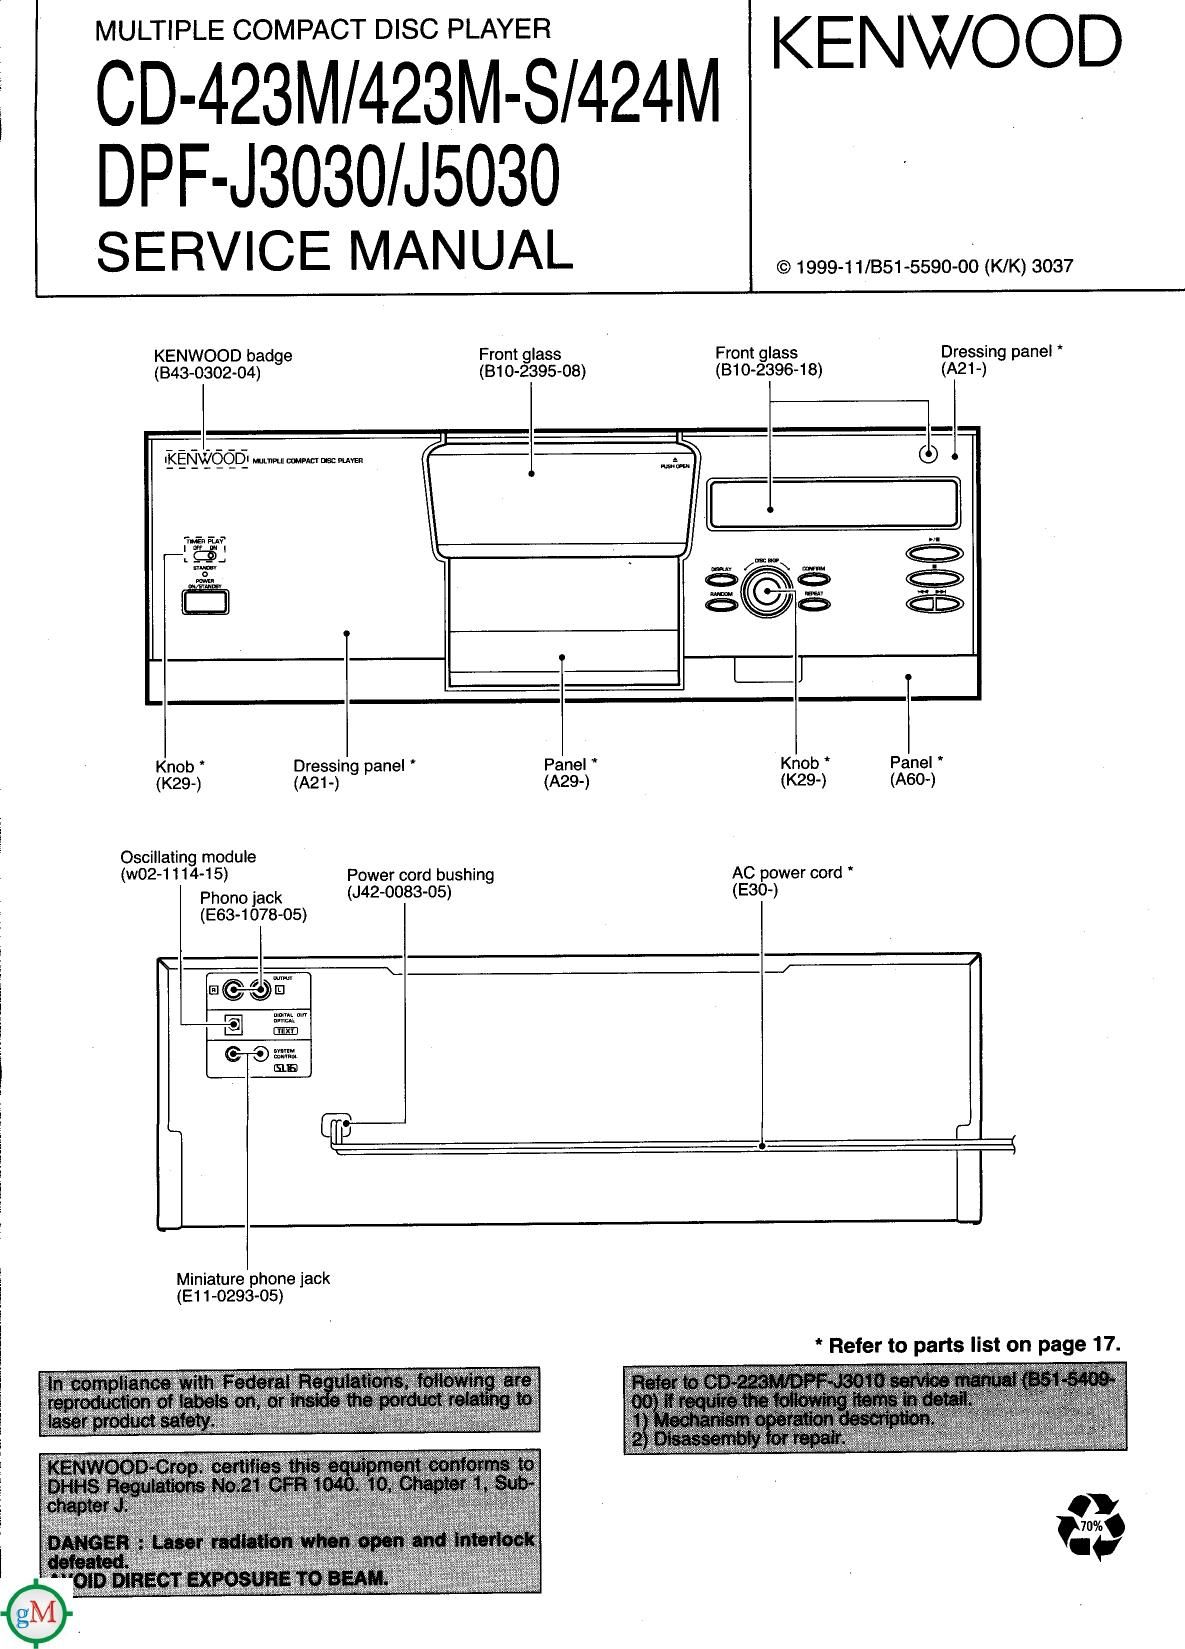 Kenwood CD 423 MS Service Manual